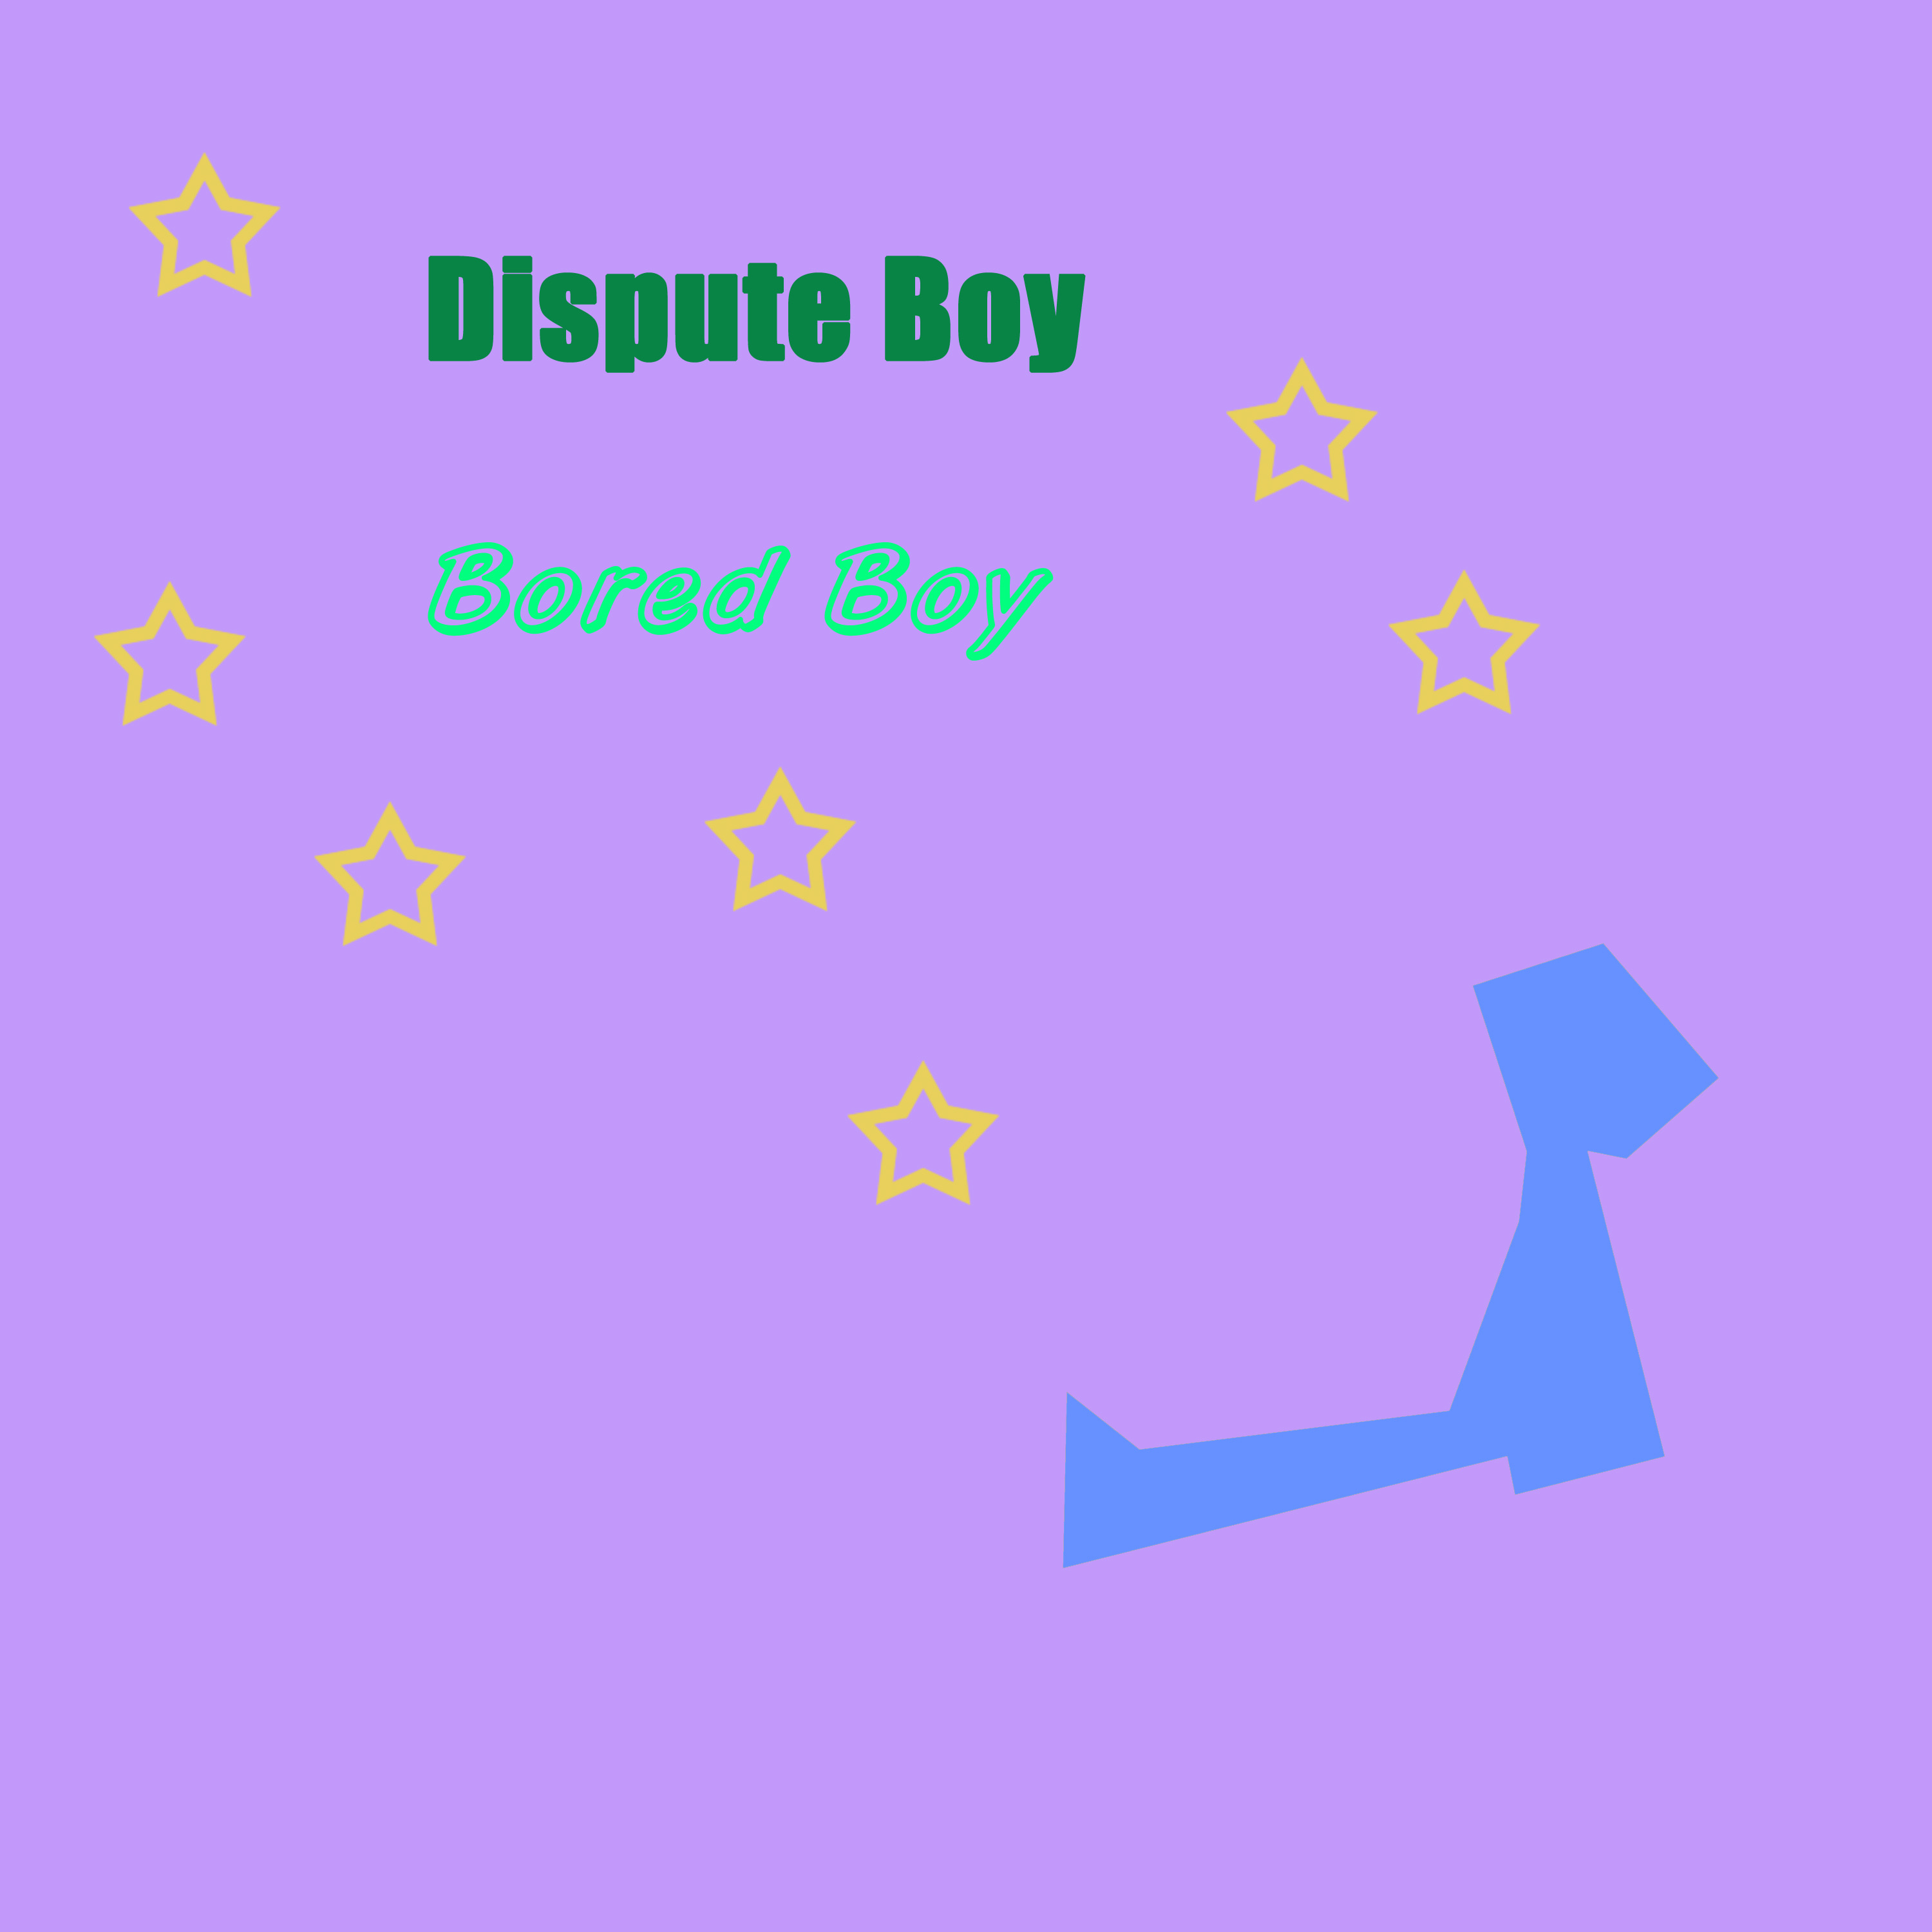 Dispute Boy